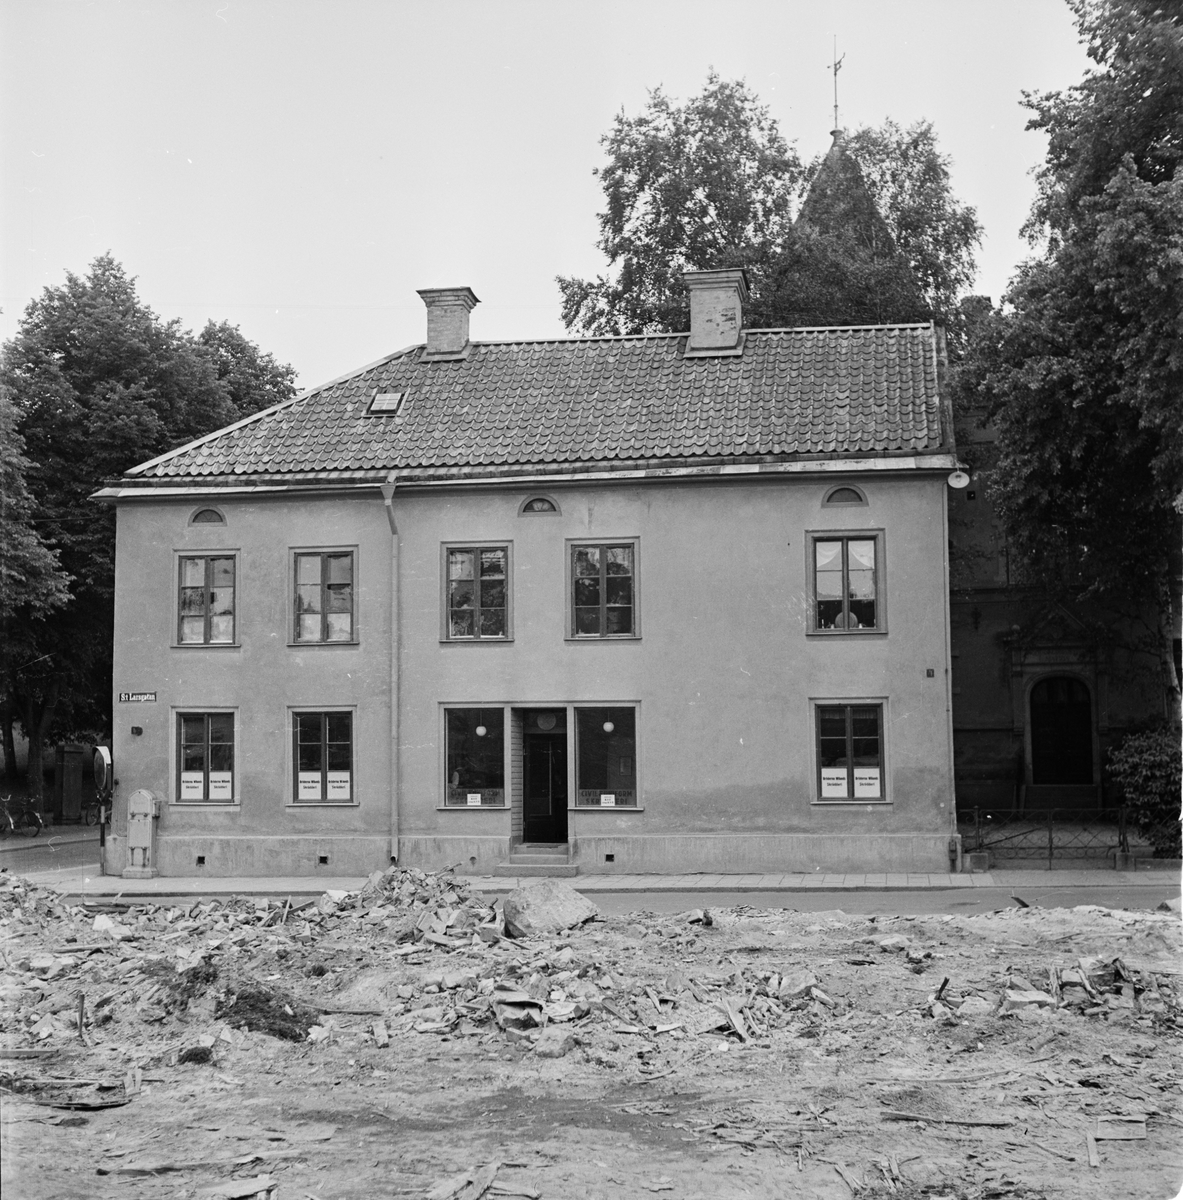 Södermanlands-Nerikes nation - rivningstomt i förgrunden, S:t Larsgatan, Uppsala 1955